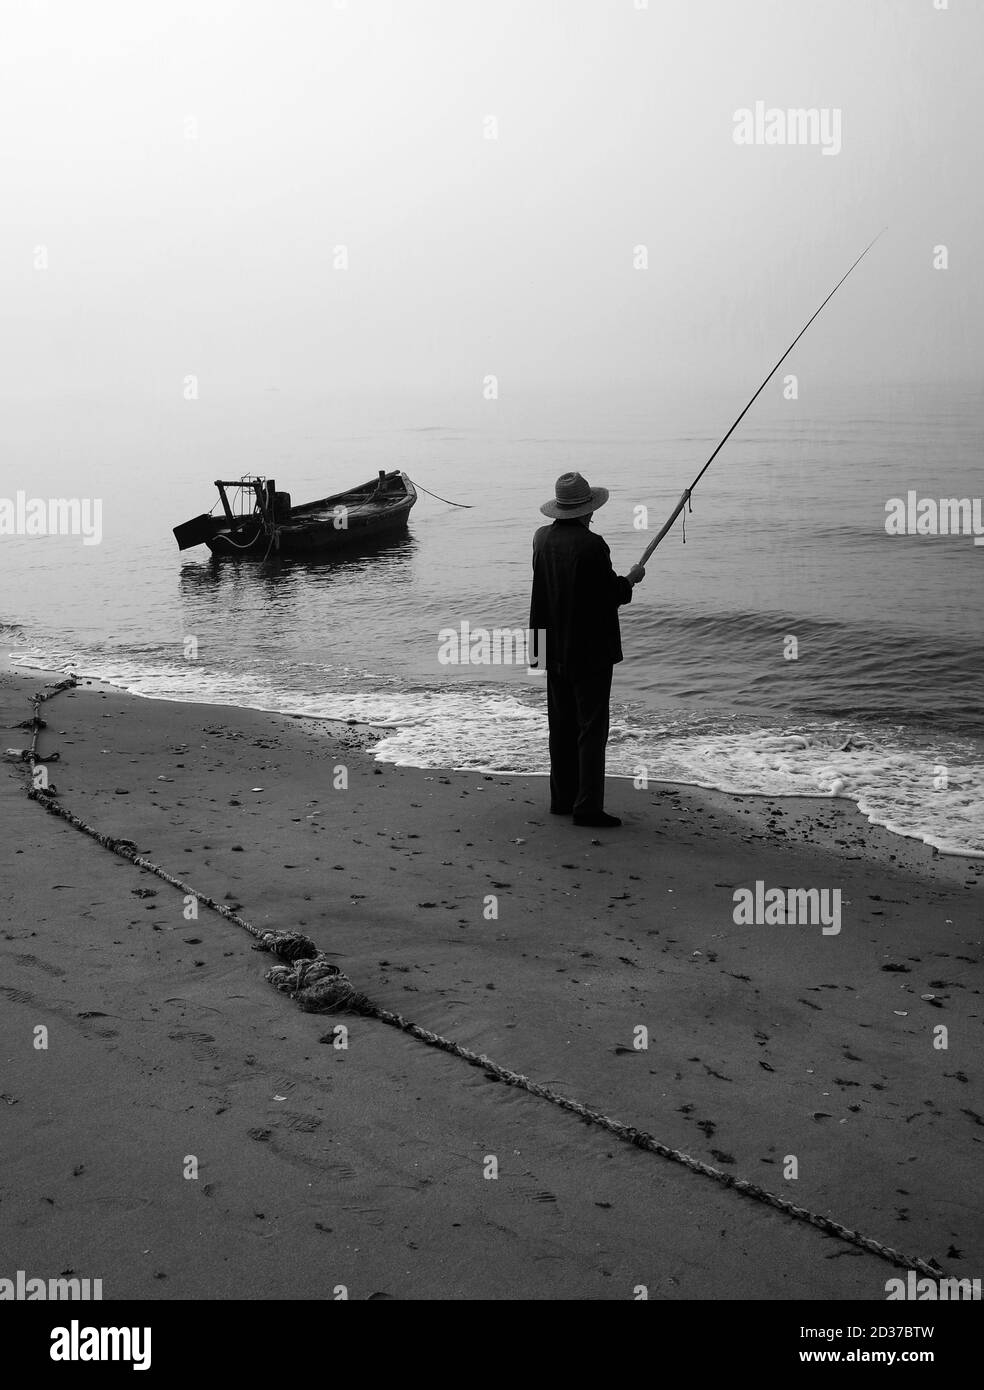 Pêcheur chinois entrain de )pecher Banque d'images noir et blanc - Alamy